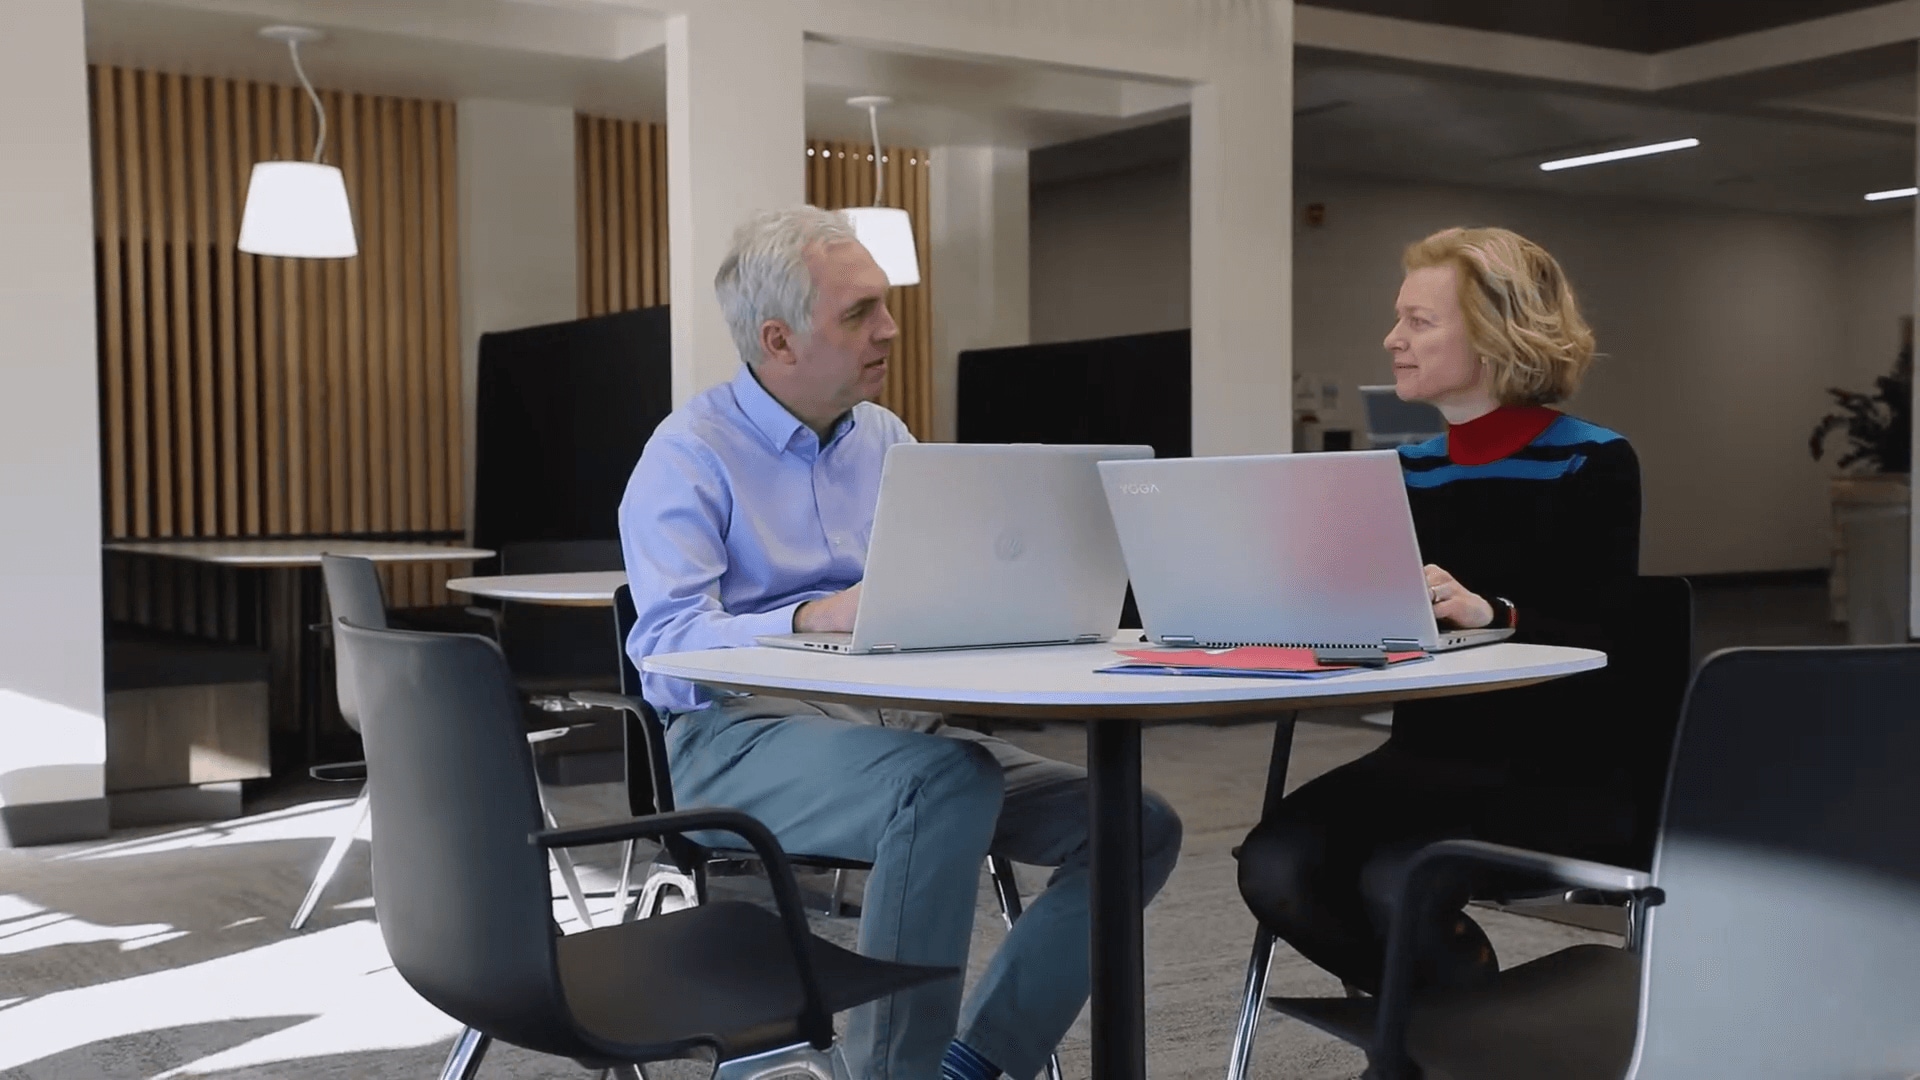 Jeffrey Jensen Arnett & Lene Arnett Jensen conversing with one another while working on laptops.